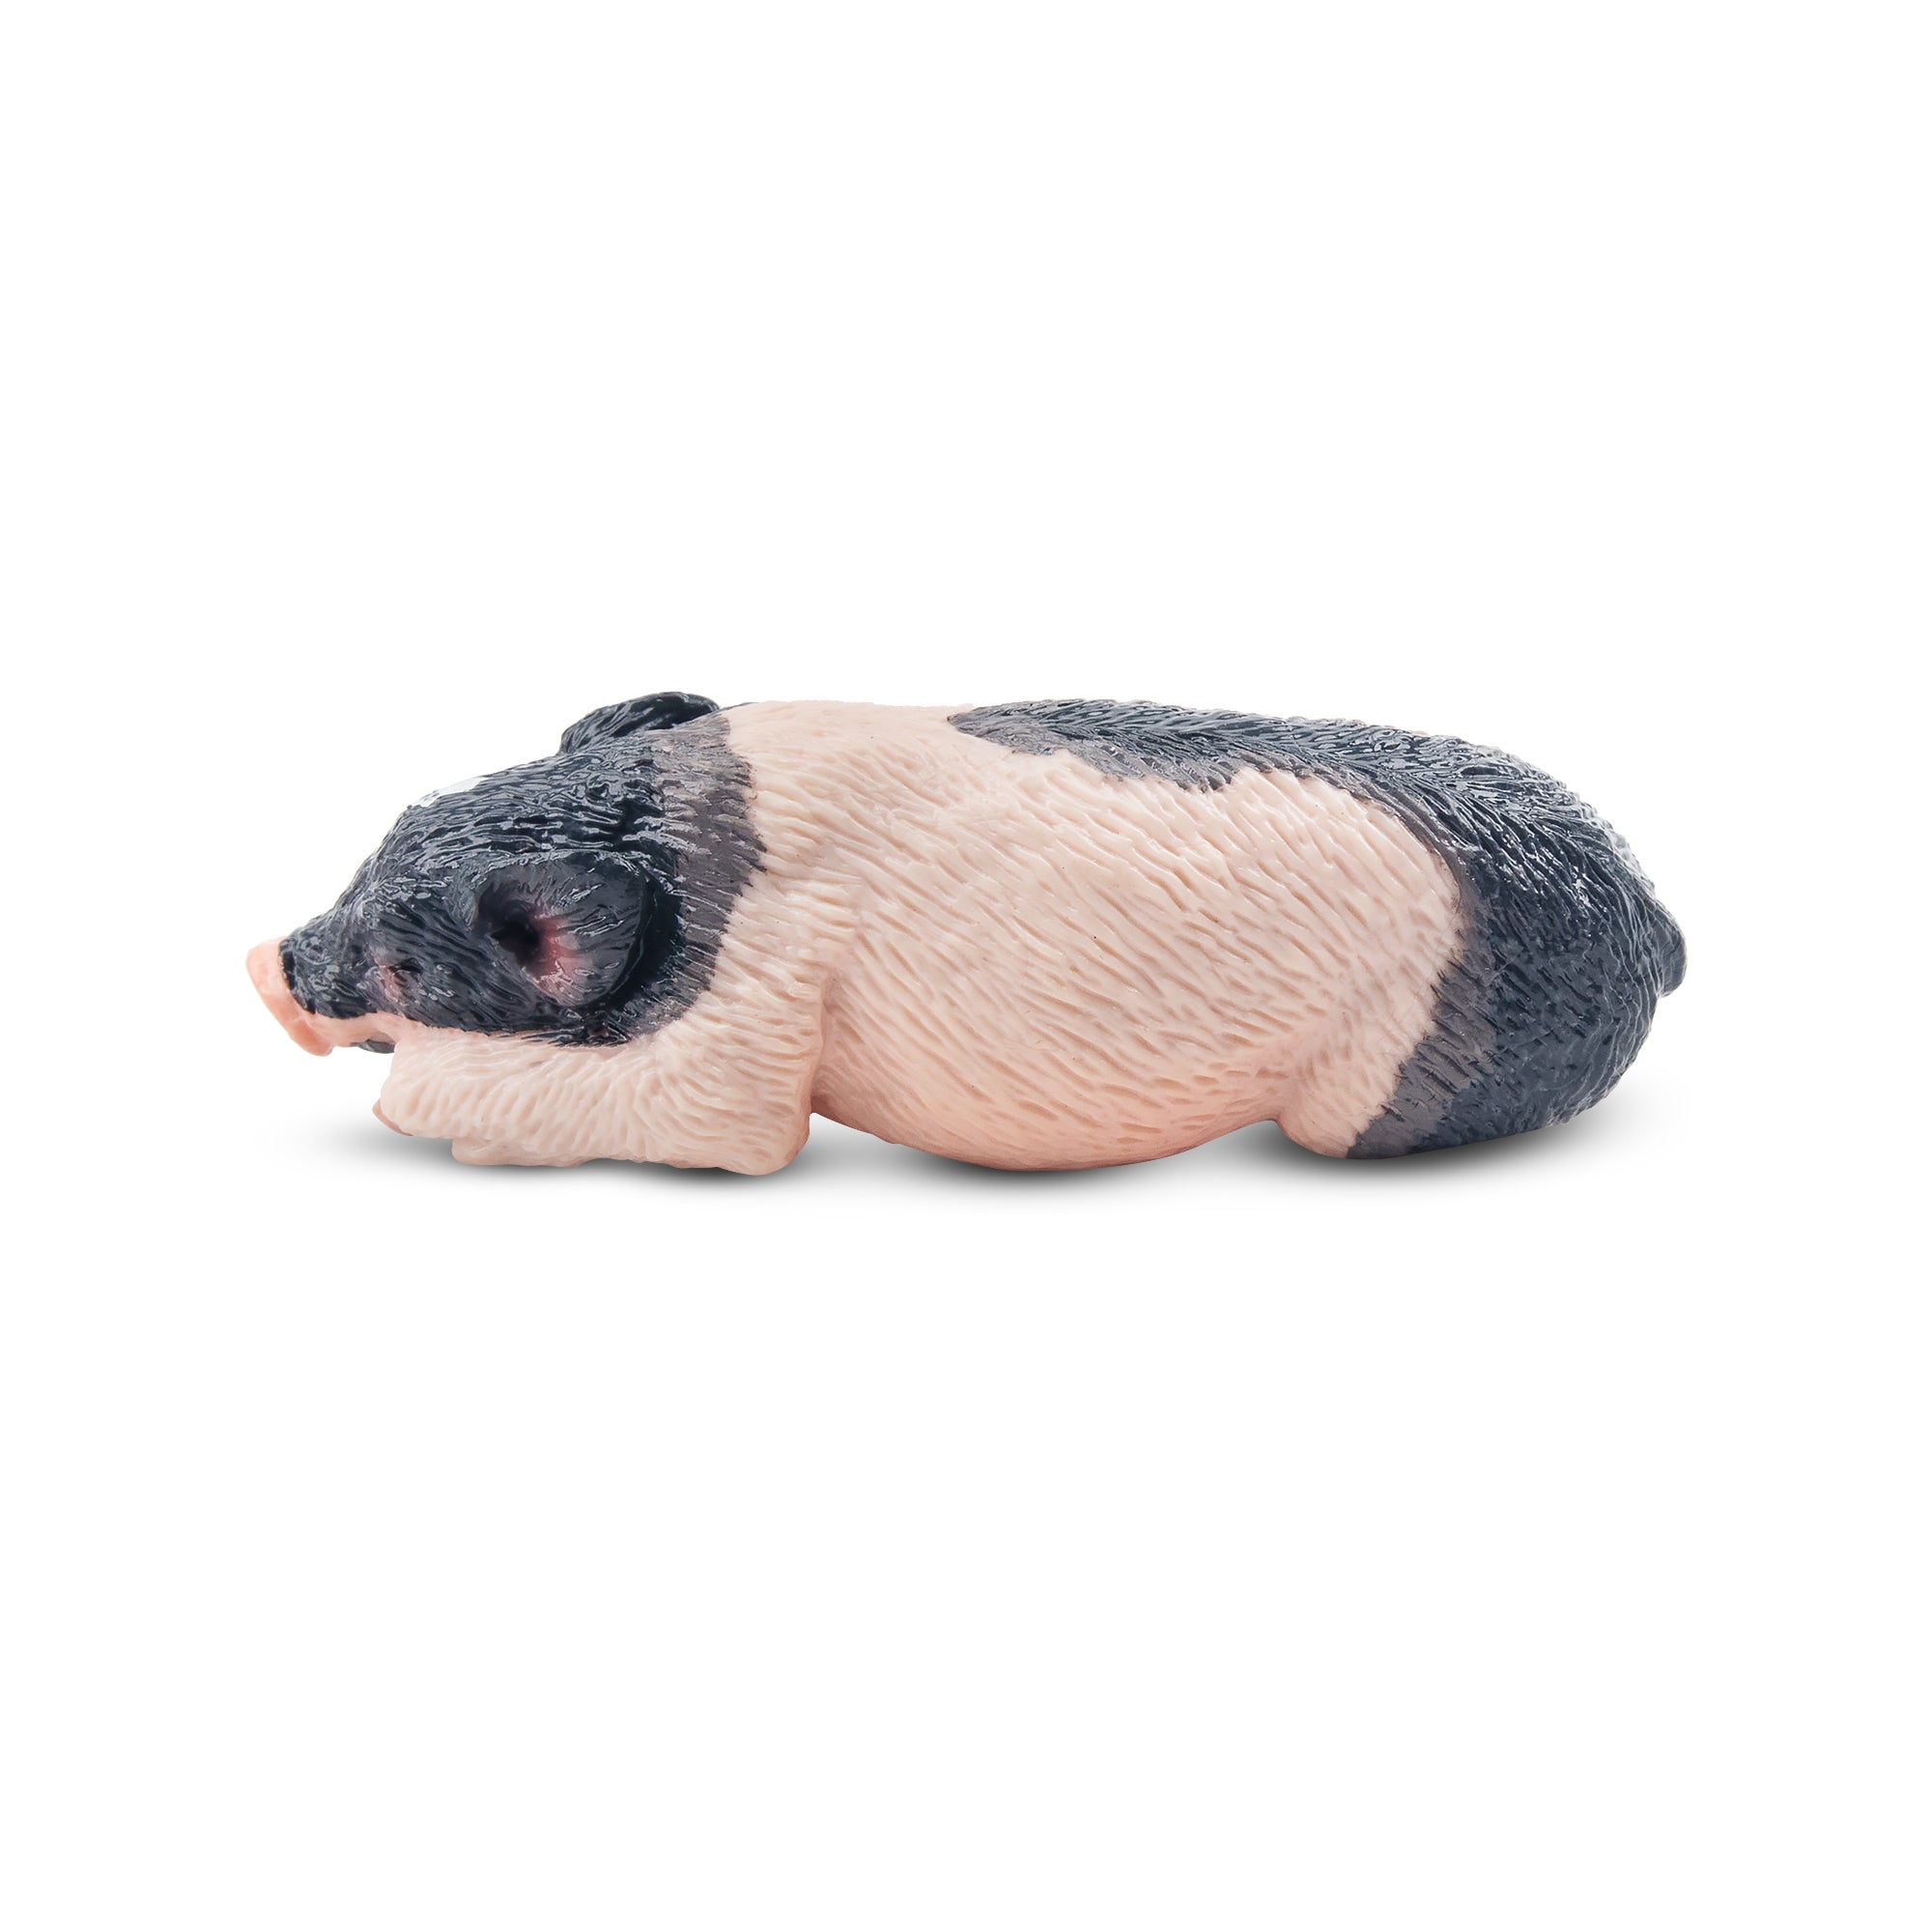 Toymany Sleeping Grey Piglet Figurine Toy